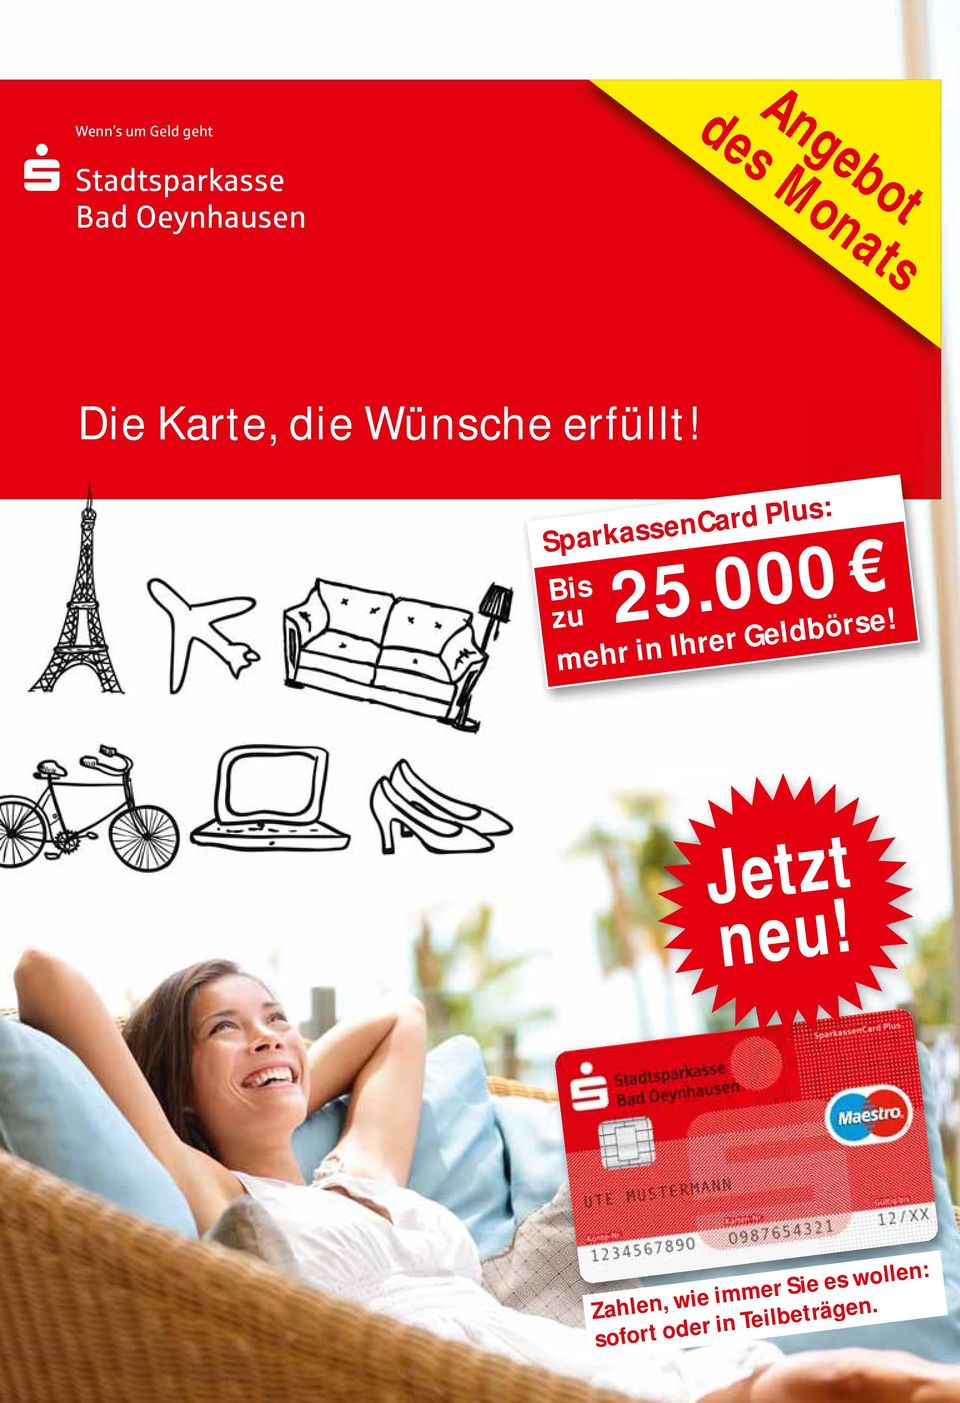 SparkassenCard Plus: Bis 25.000 zu mehr in Ihrer Geldbörse!